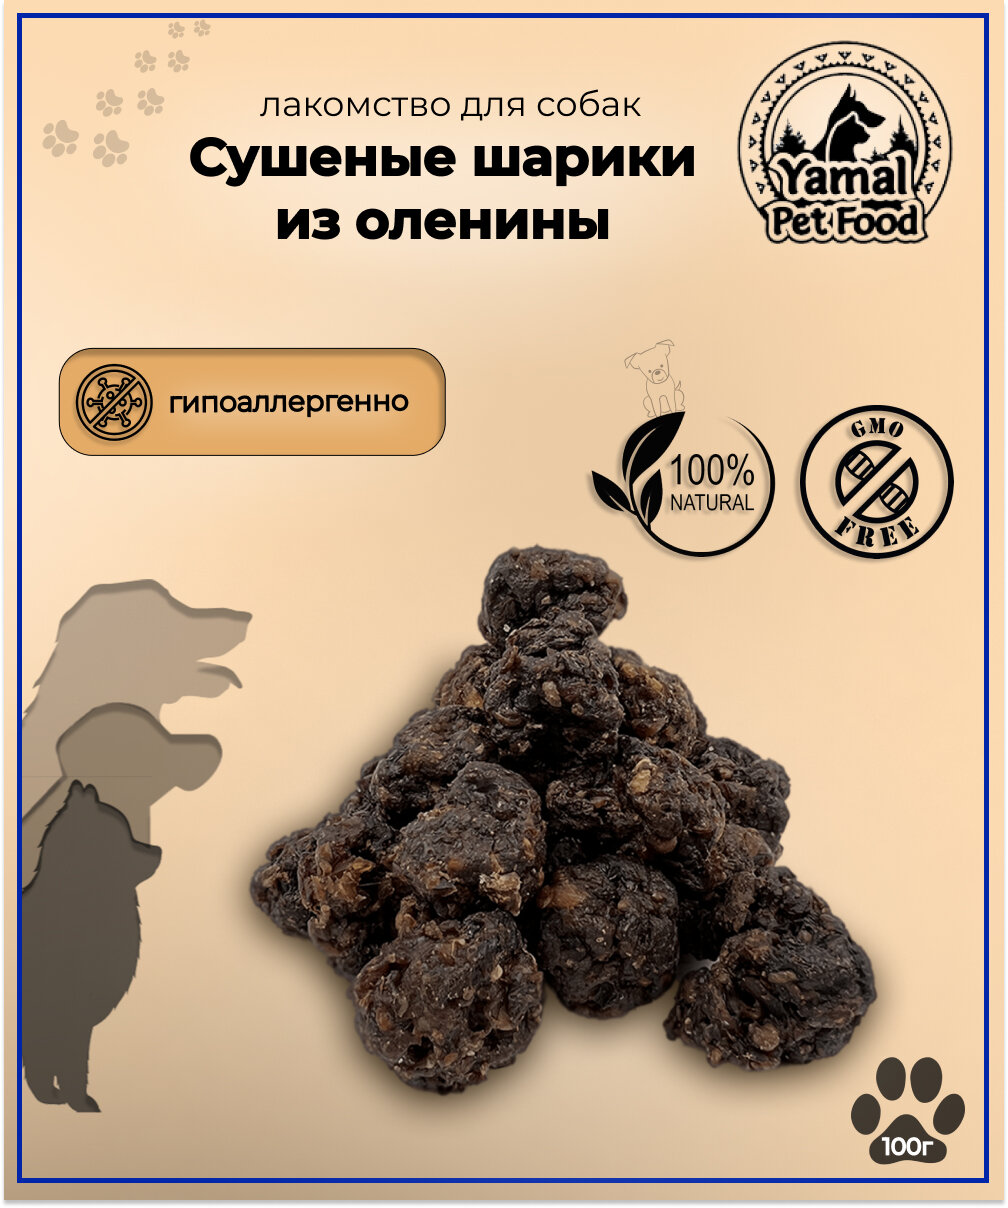 Лакомство для собак "Сушеные шарики из мяса северного оленя - мит болы", 100 гр.